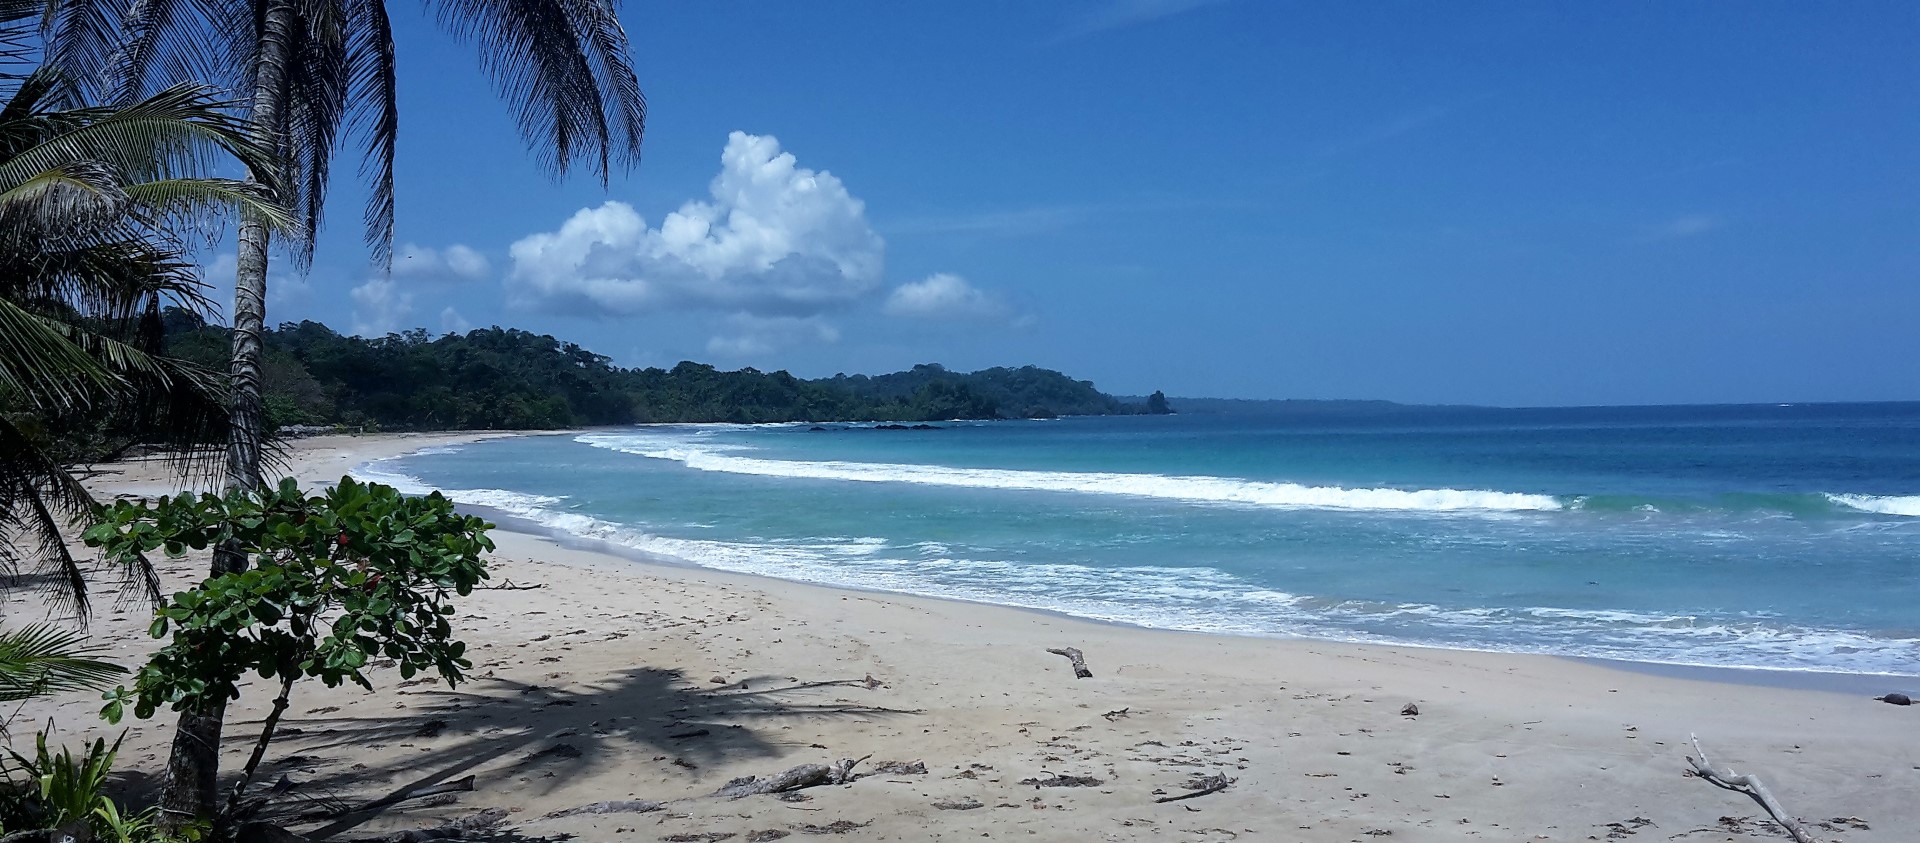 Red Frog beach, Bastiementos, Bocas del Toro, aanbeding vakantiebeurs panama